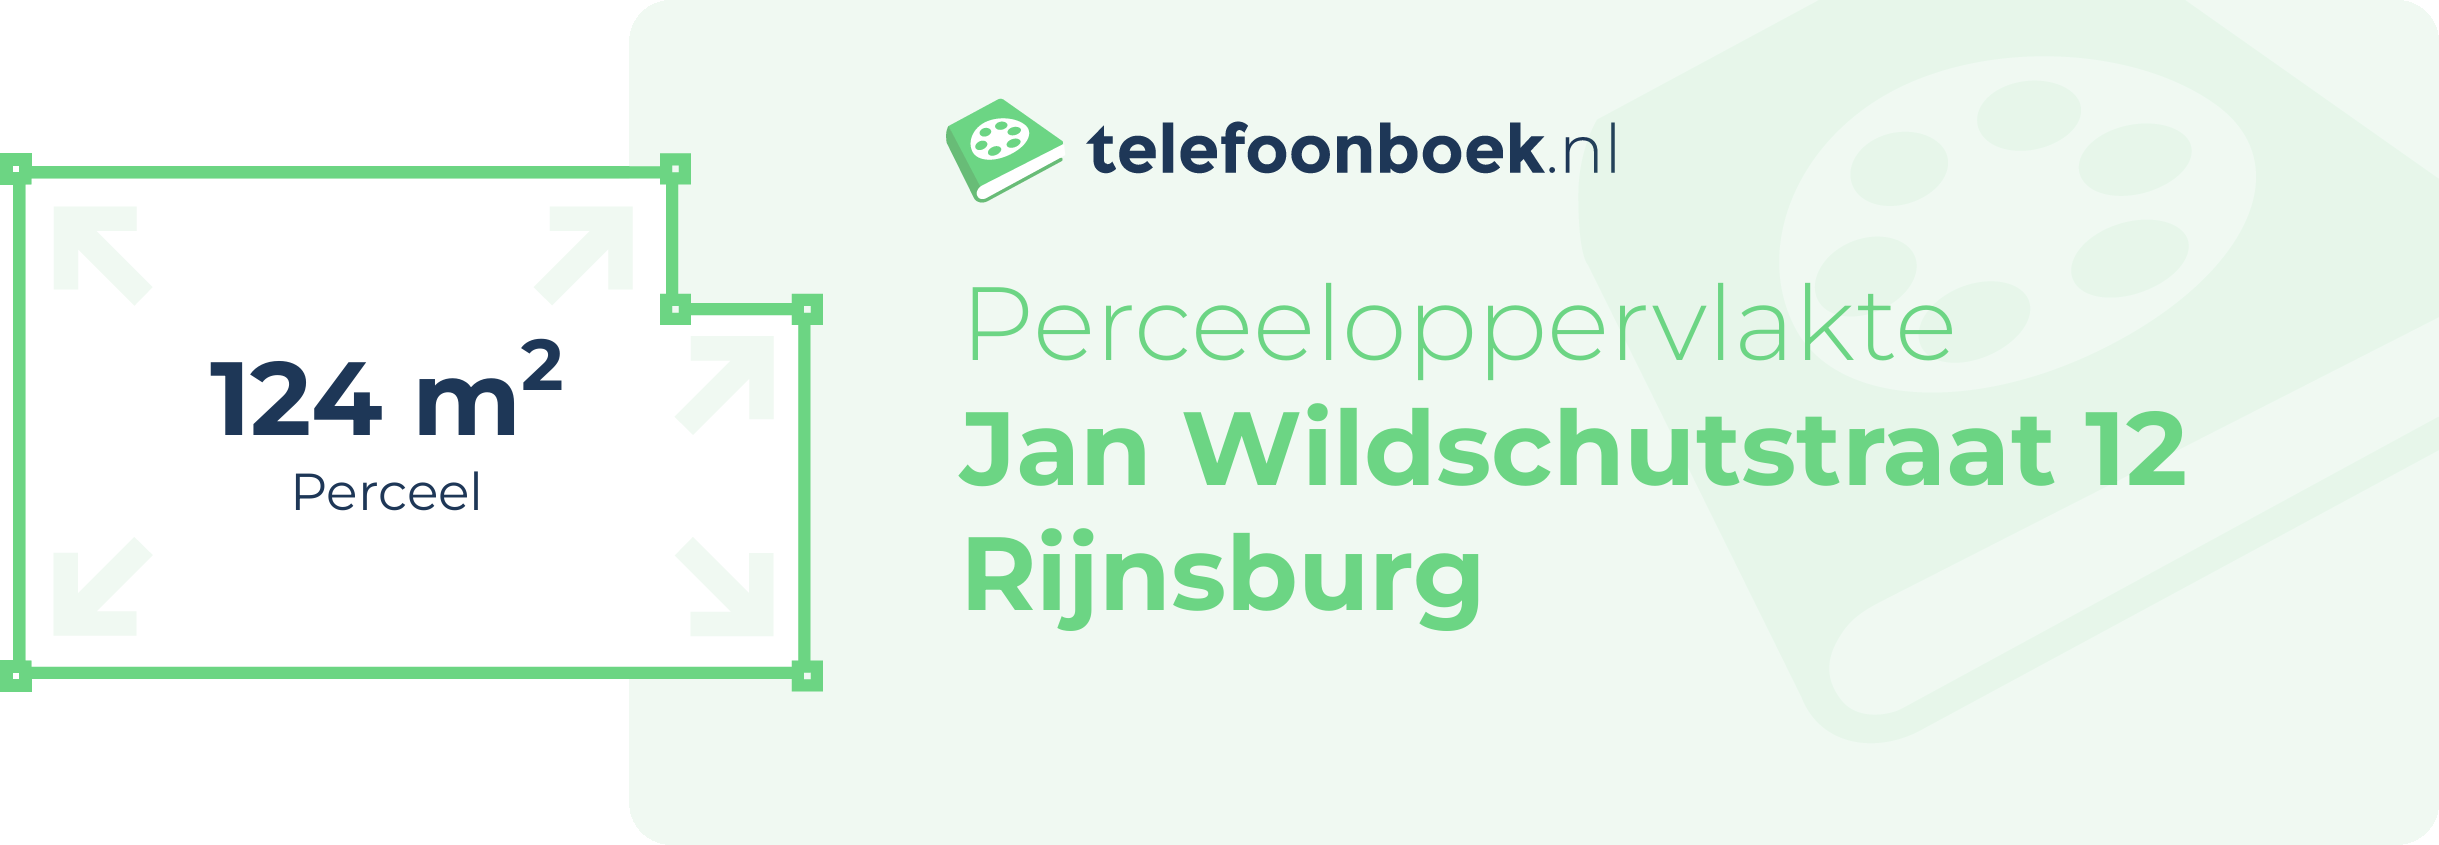 Perceeloppervlakte Jan Wildschutstraat 12 Rijnsburg